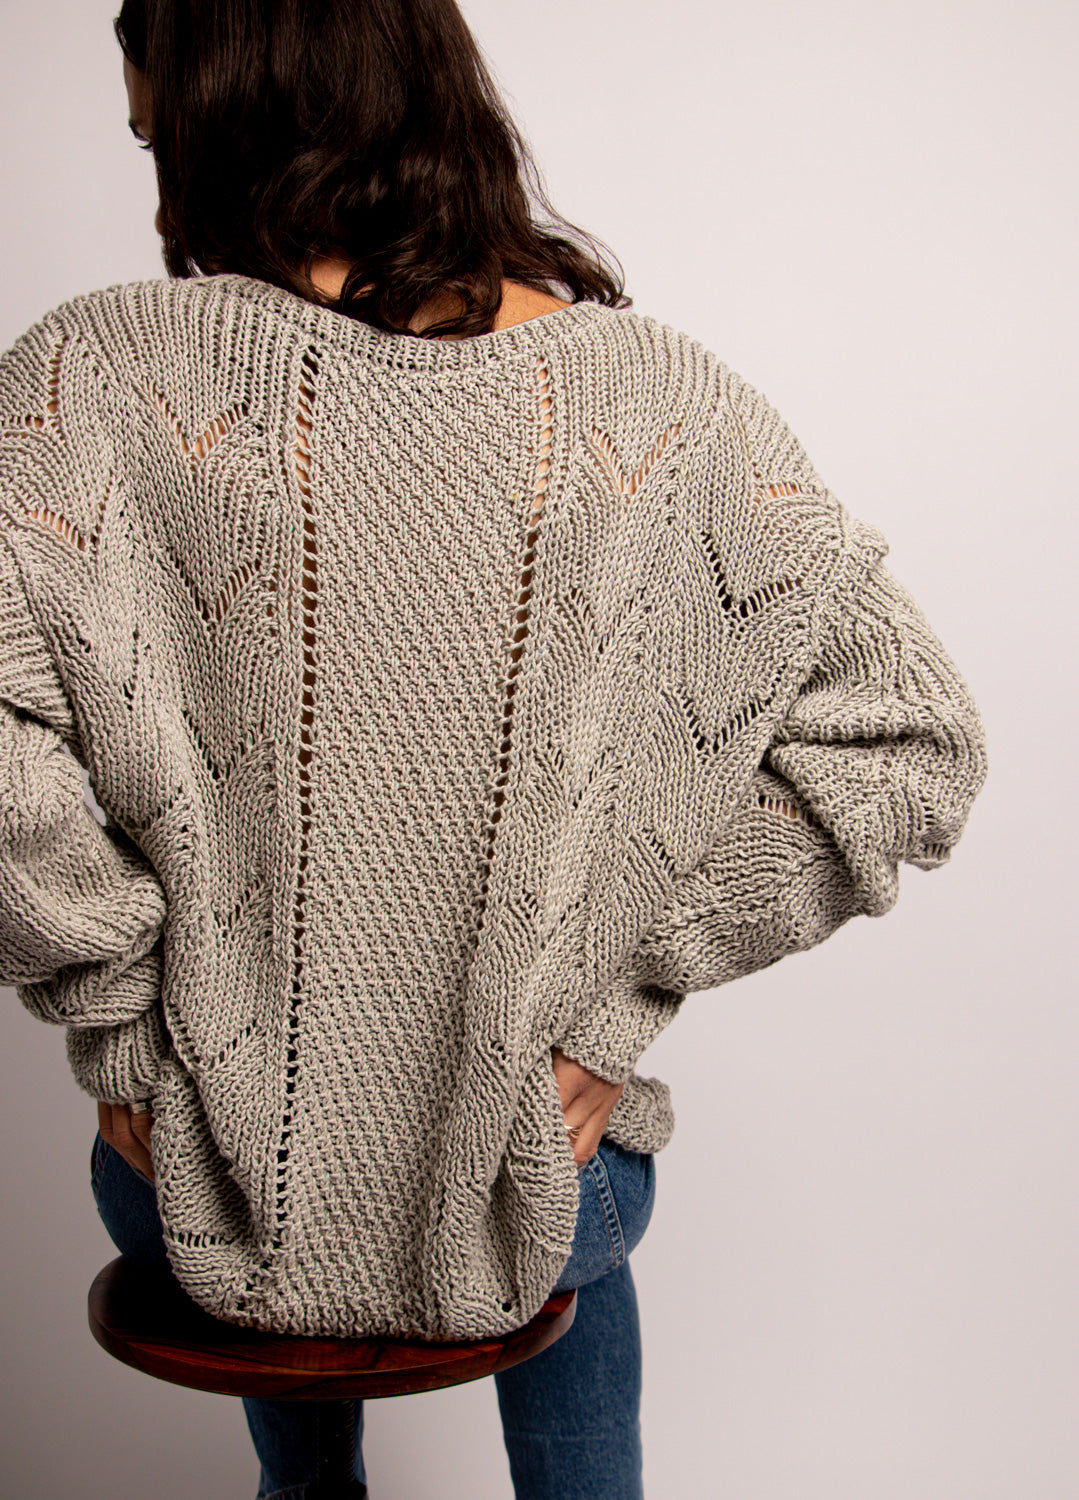 Aeraki Sweater Kit